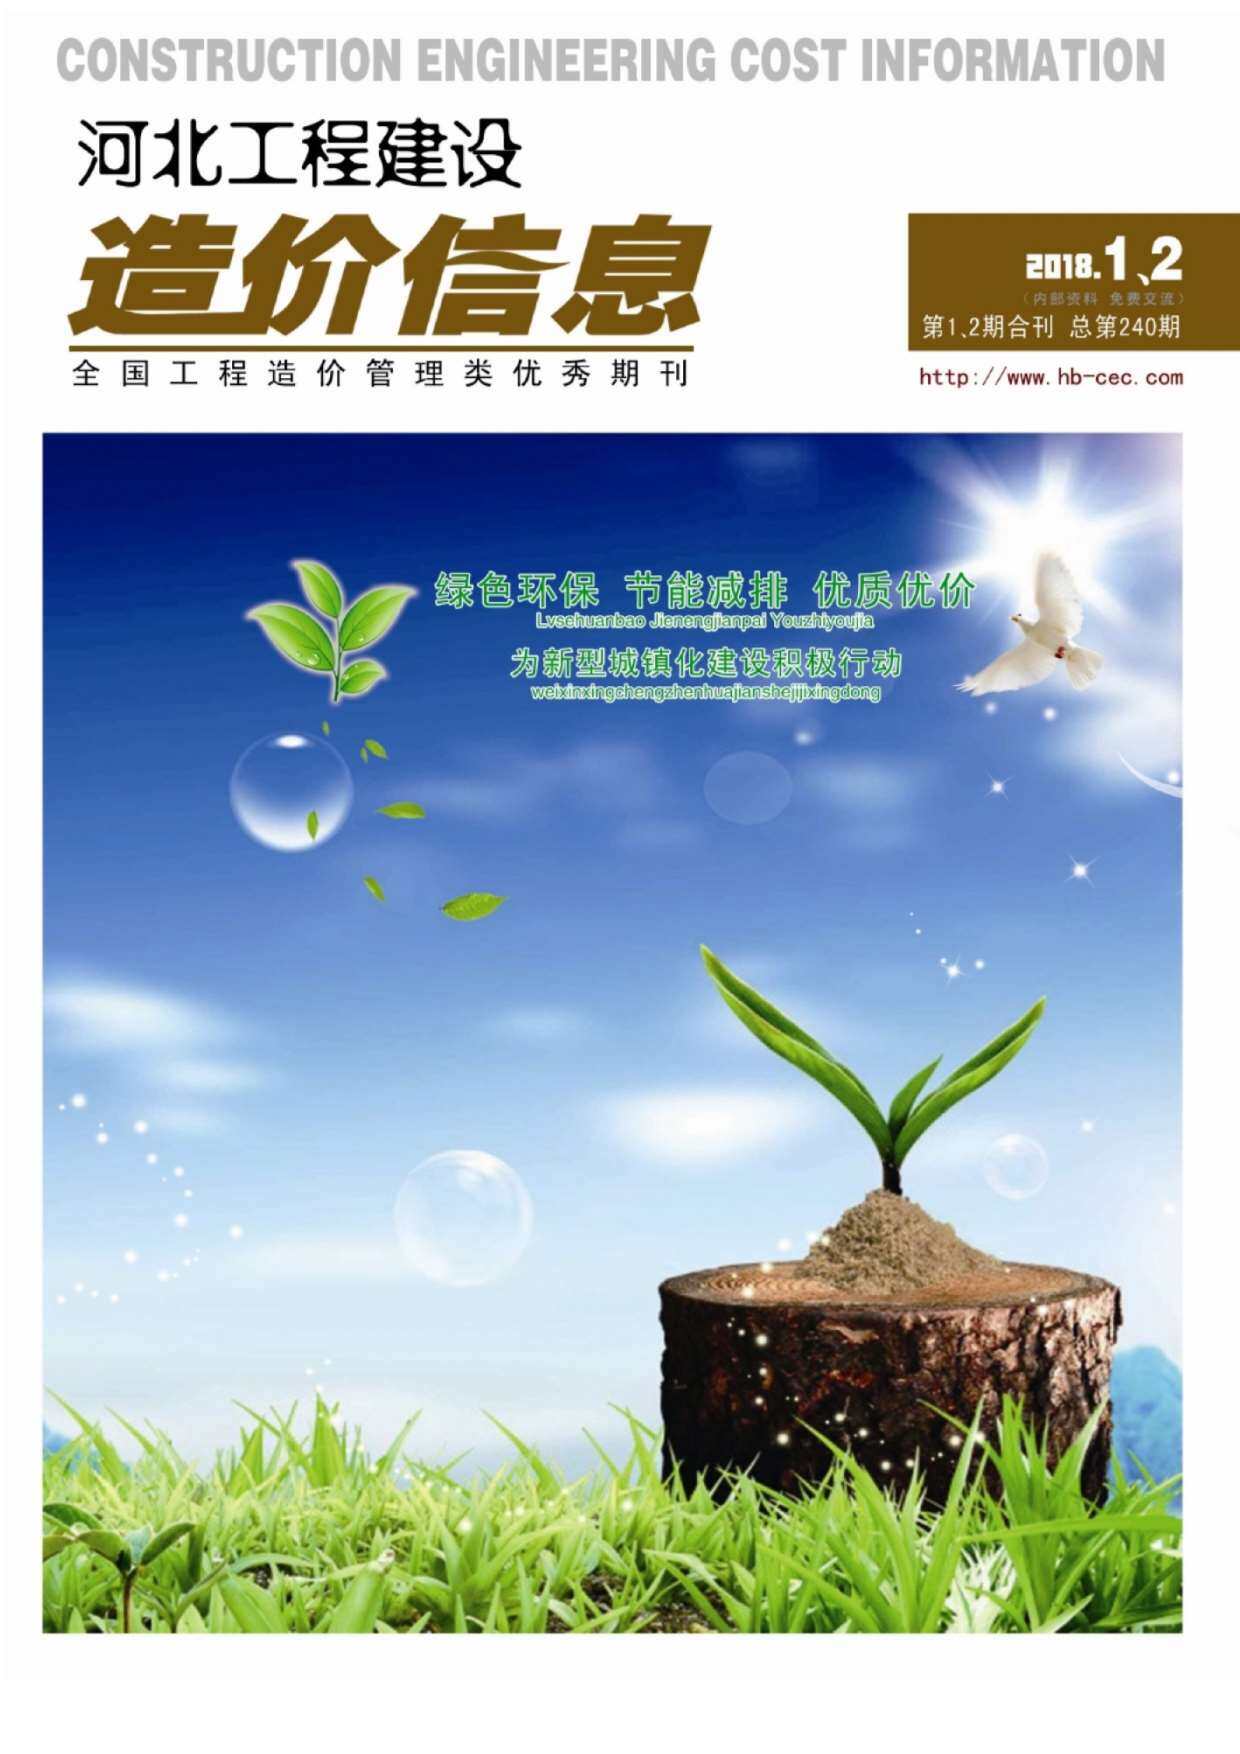 河北省2018年1月工程造价信息期刊